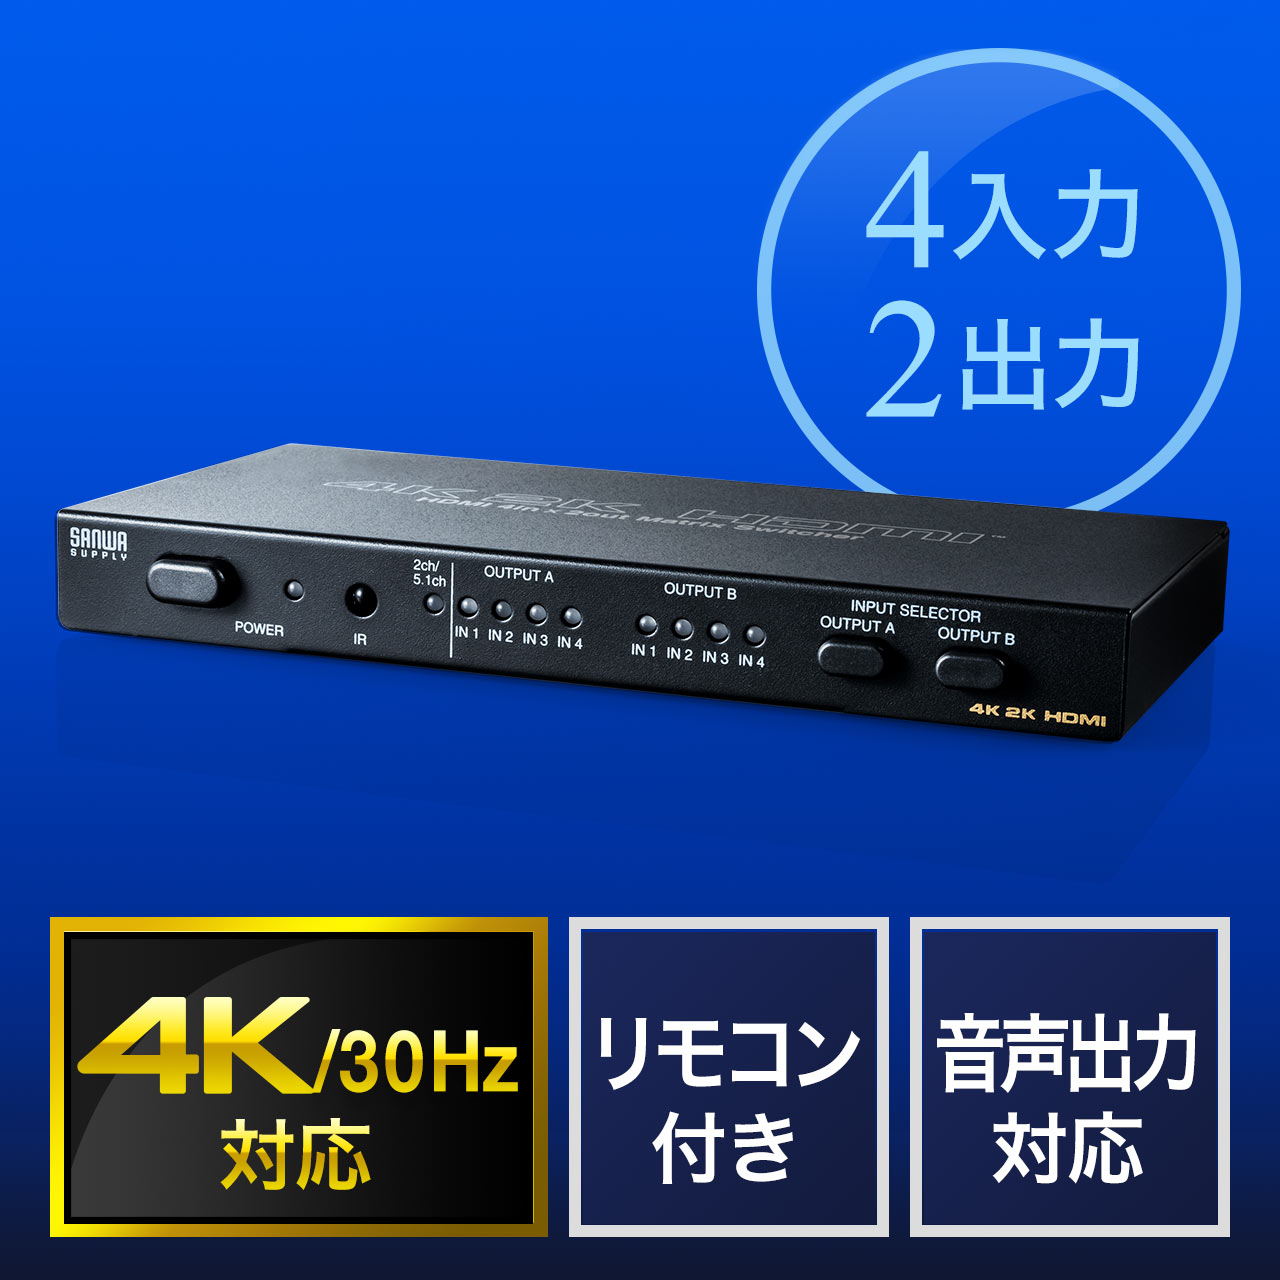 【期間限定セール】HDMIマトリックス切替器 4入力2出力 4K/30Hz対応 光 同軸デジタル音声端子つき 400-SW027